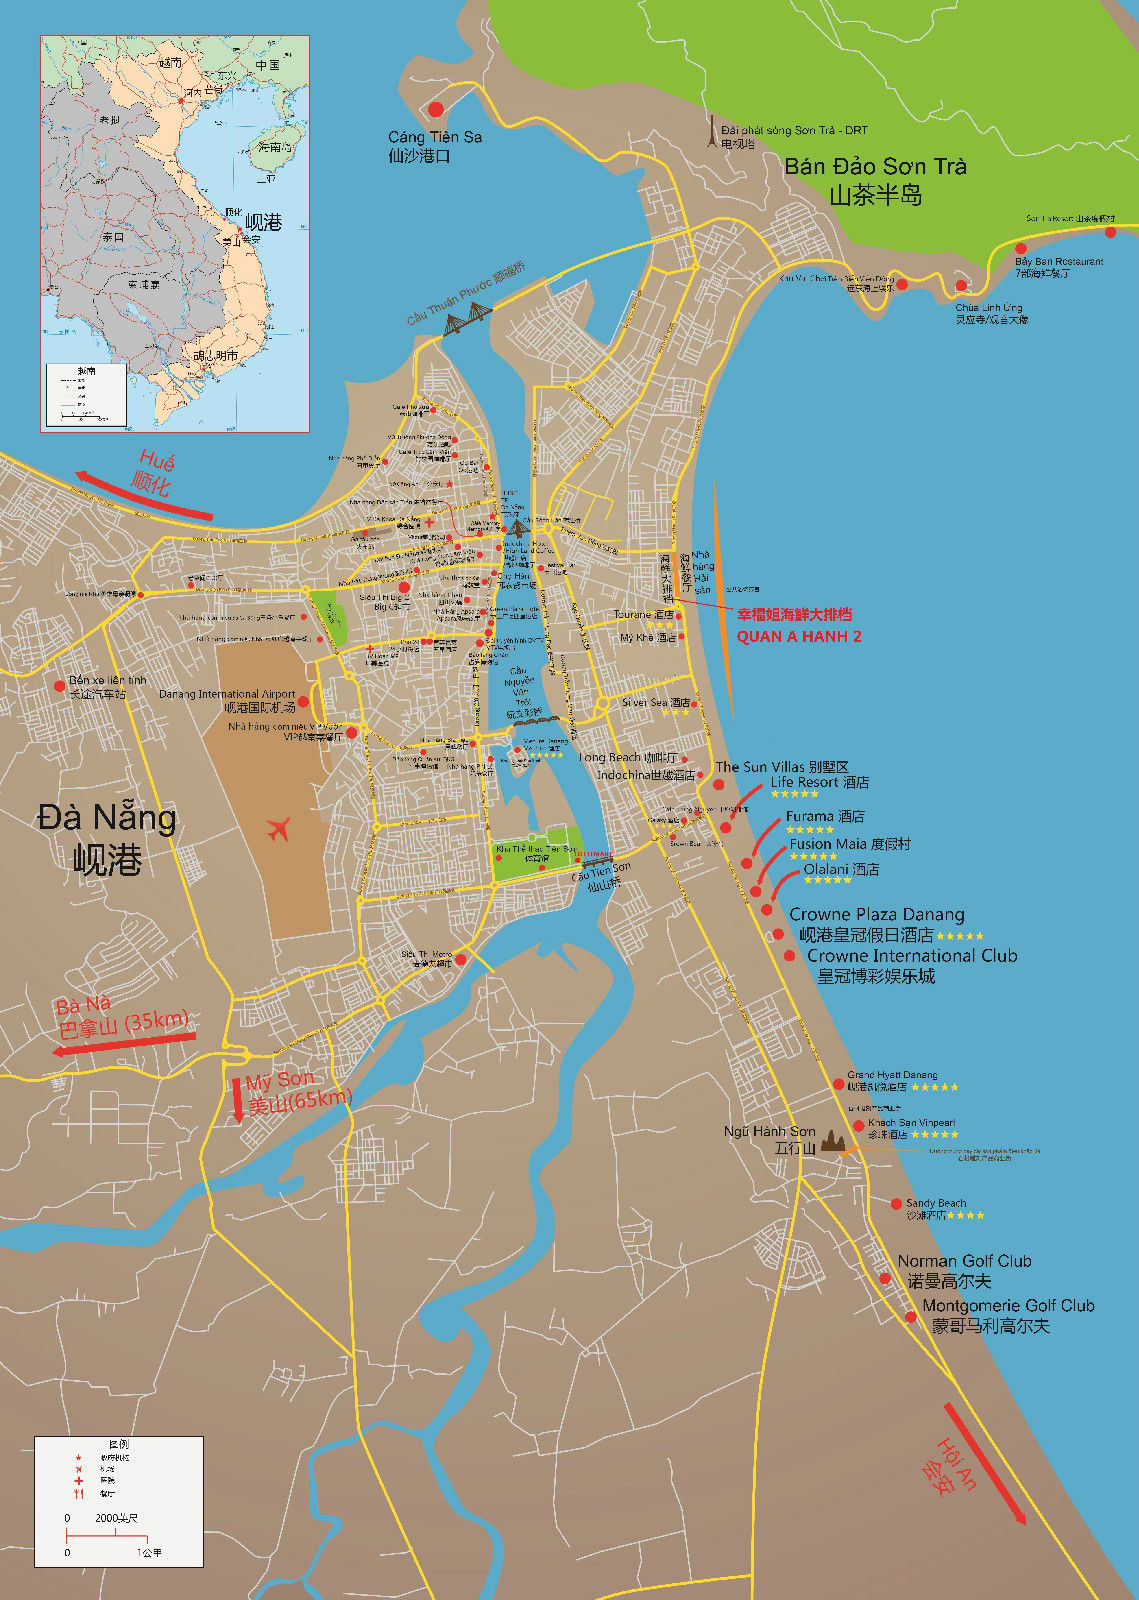 岘港地图中文版图片